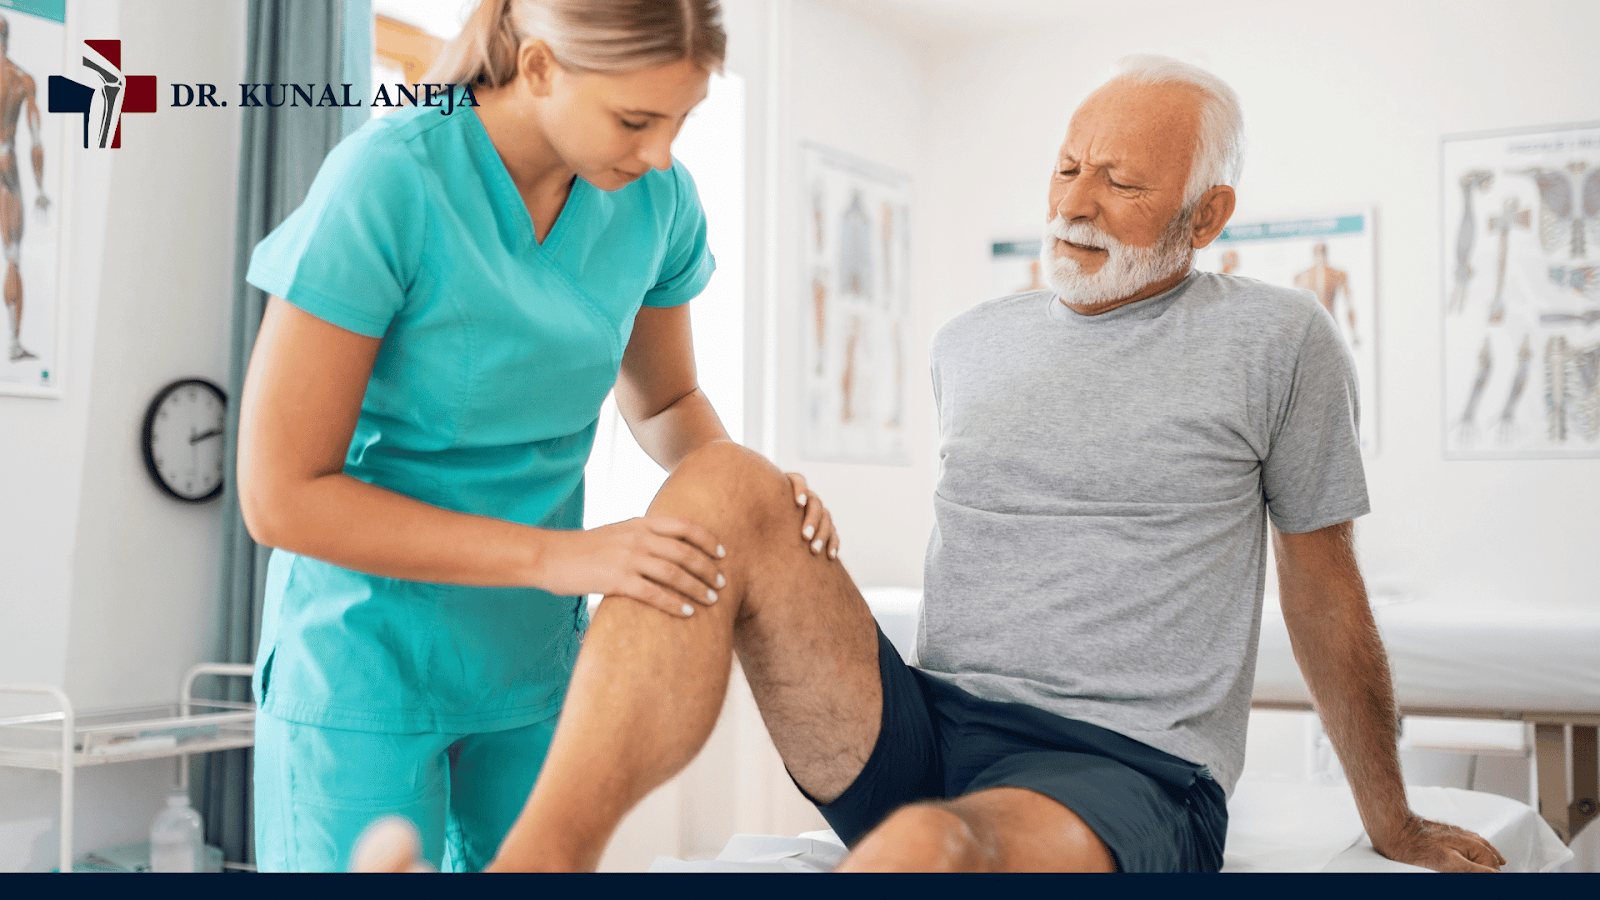 knee replacement surgeon in delhi

